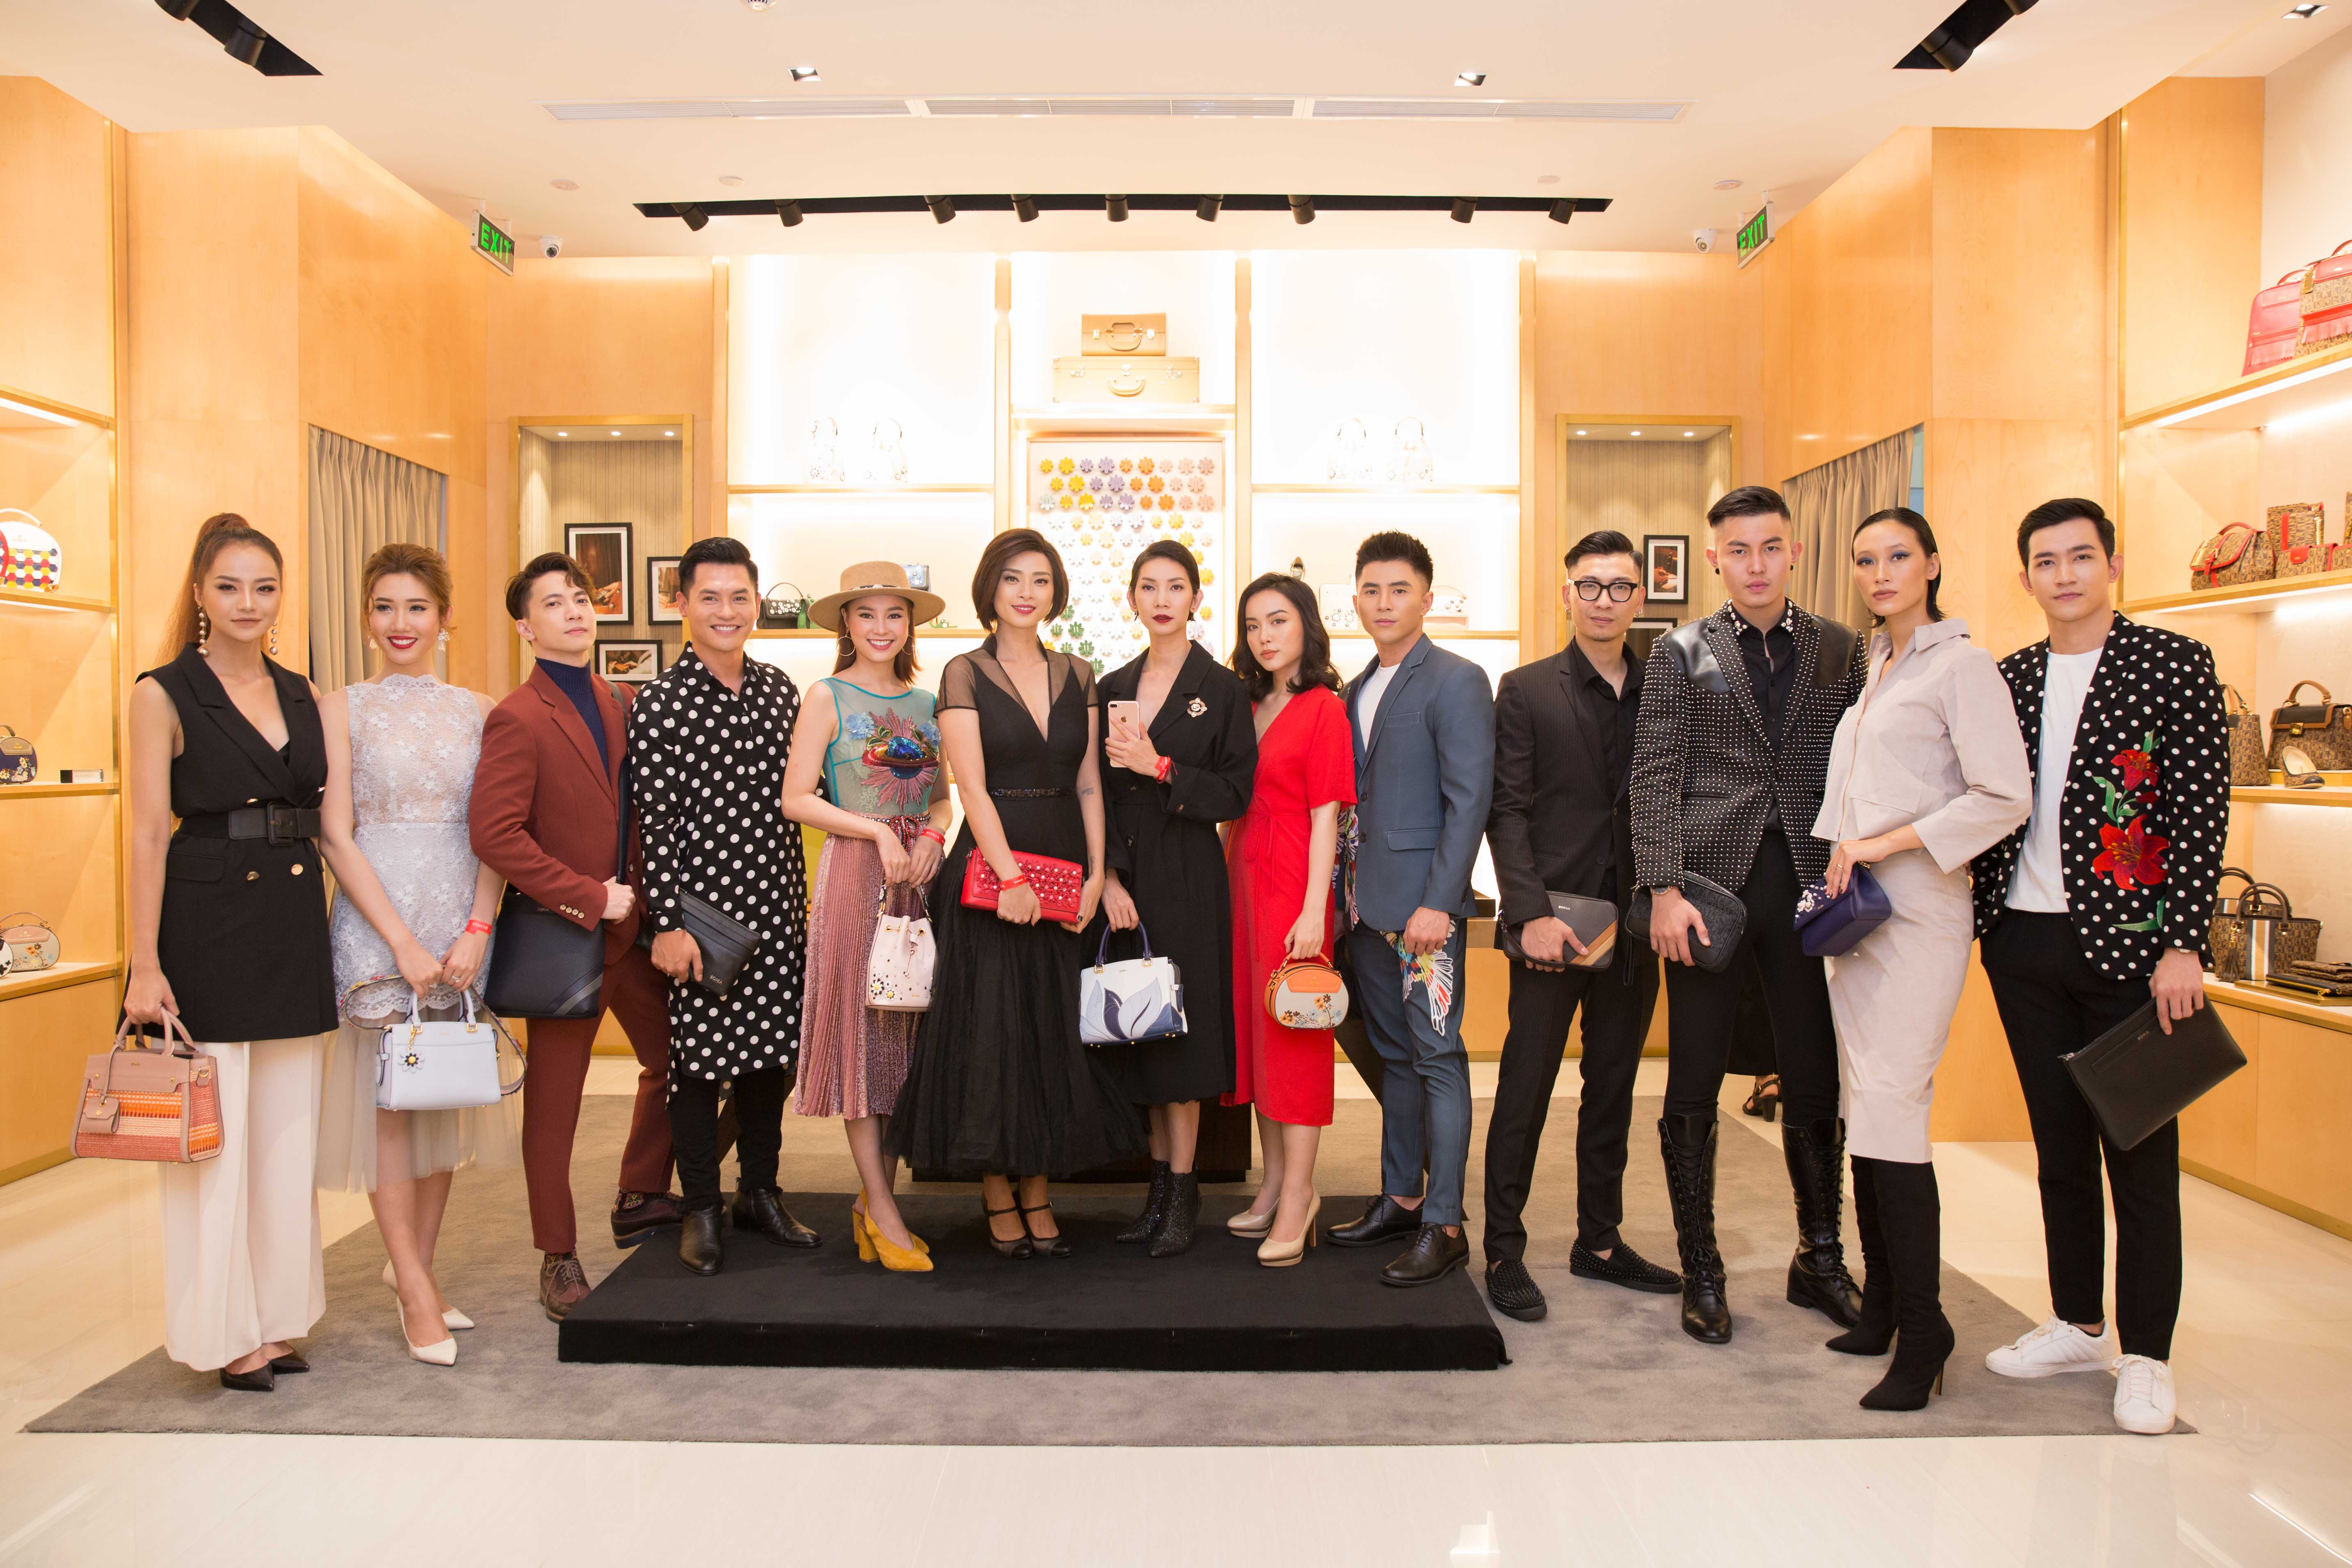 Buổi tiệc khai trương cửa hàng BONIA tại TTTM Crescent Mall thu hút sự hiện diện của những tên tuổi nổi bật trong làng giải trí Việt Nam